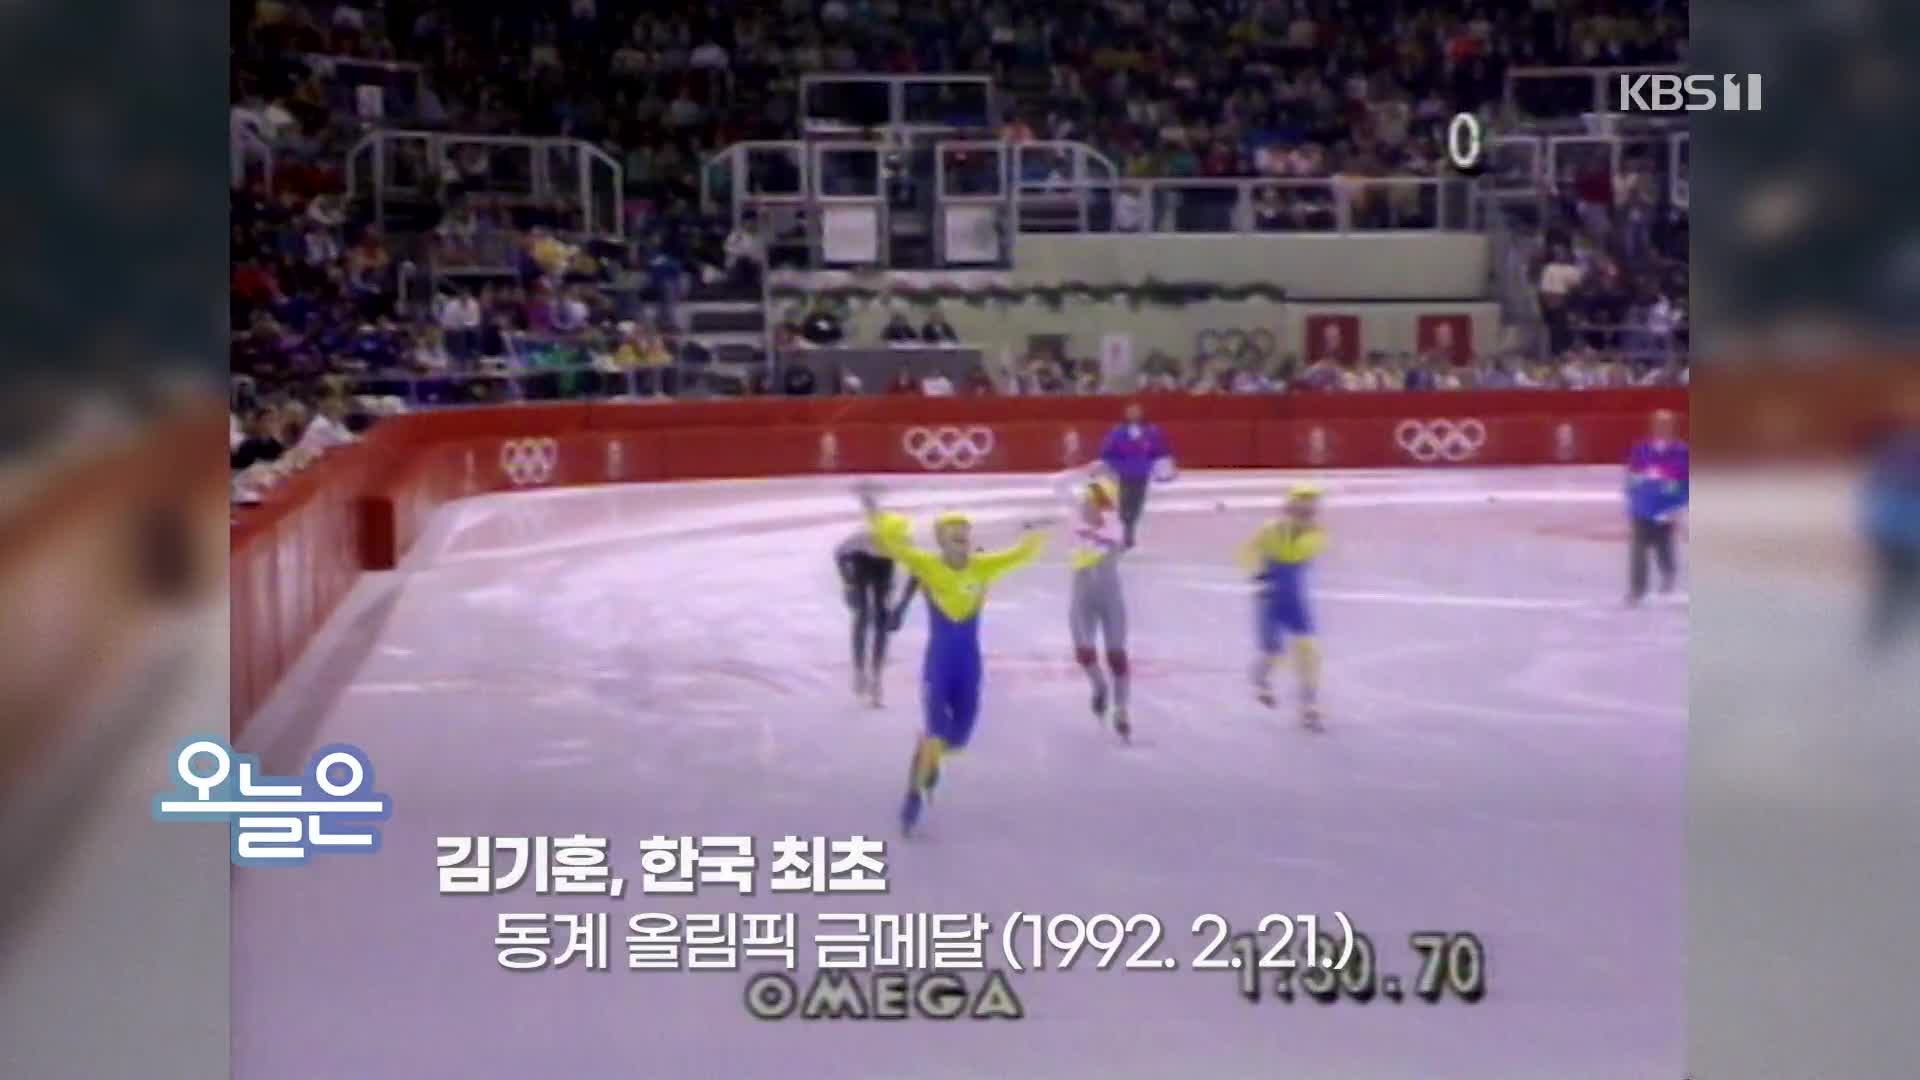 [오늘은] 김기훈, 한국 최초 동계 올림픽 금메달 (1992. 2. 21.)